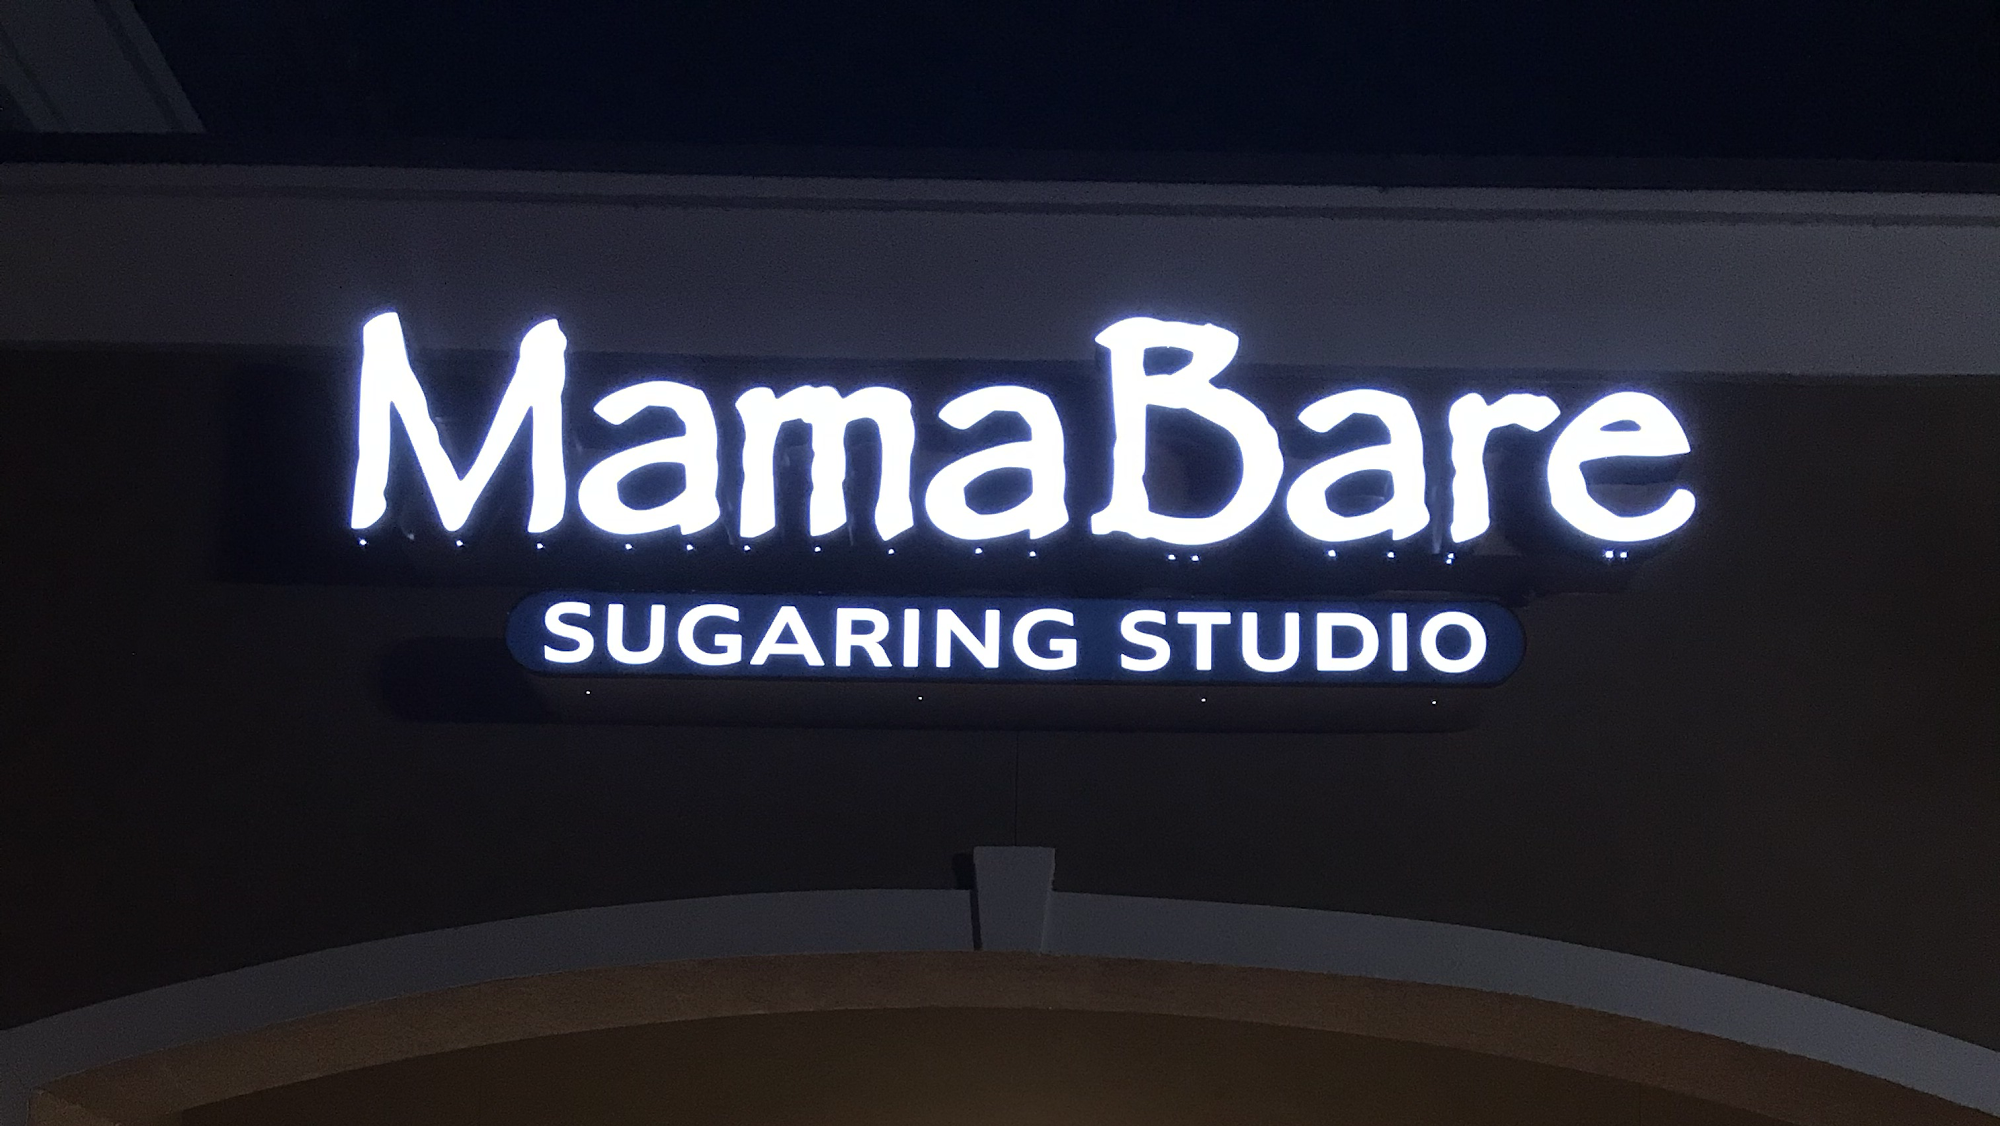 MamaBare Sugaring Studio of Ormond Beach